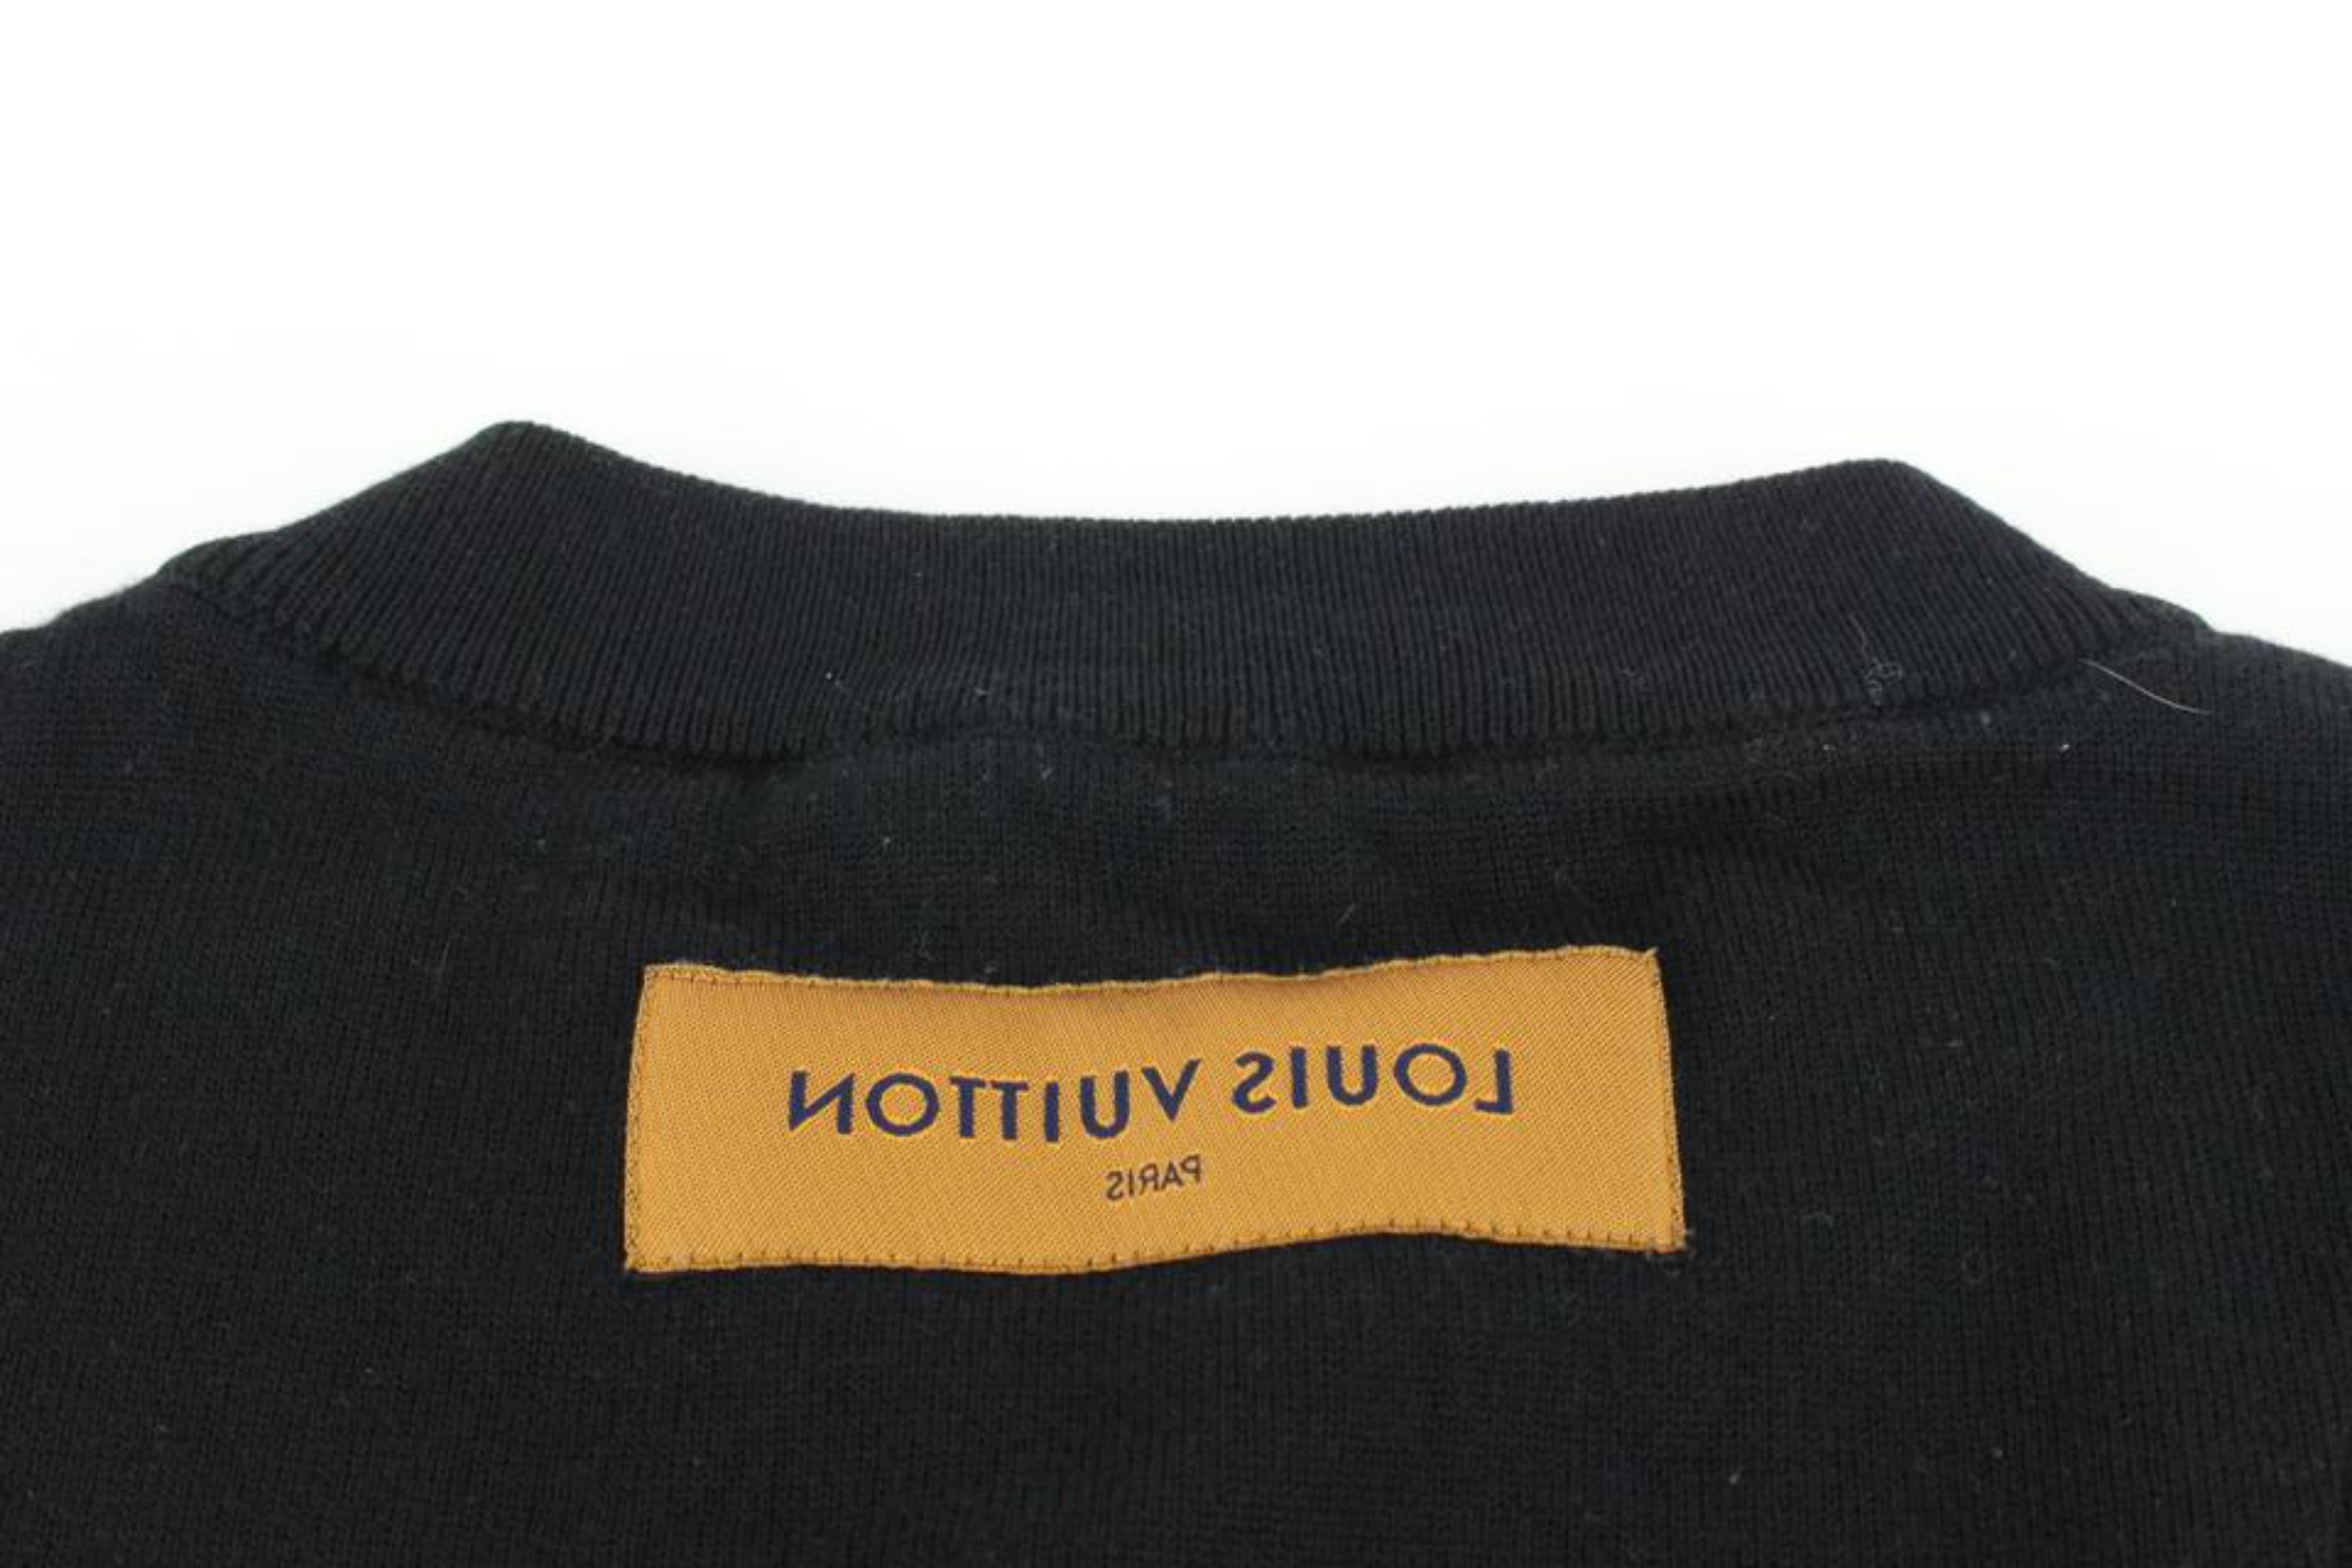 Louis Vuitton Men's Large Virgil Abloh Black Upsidedown Label Sweater 23lv617s 4